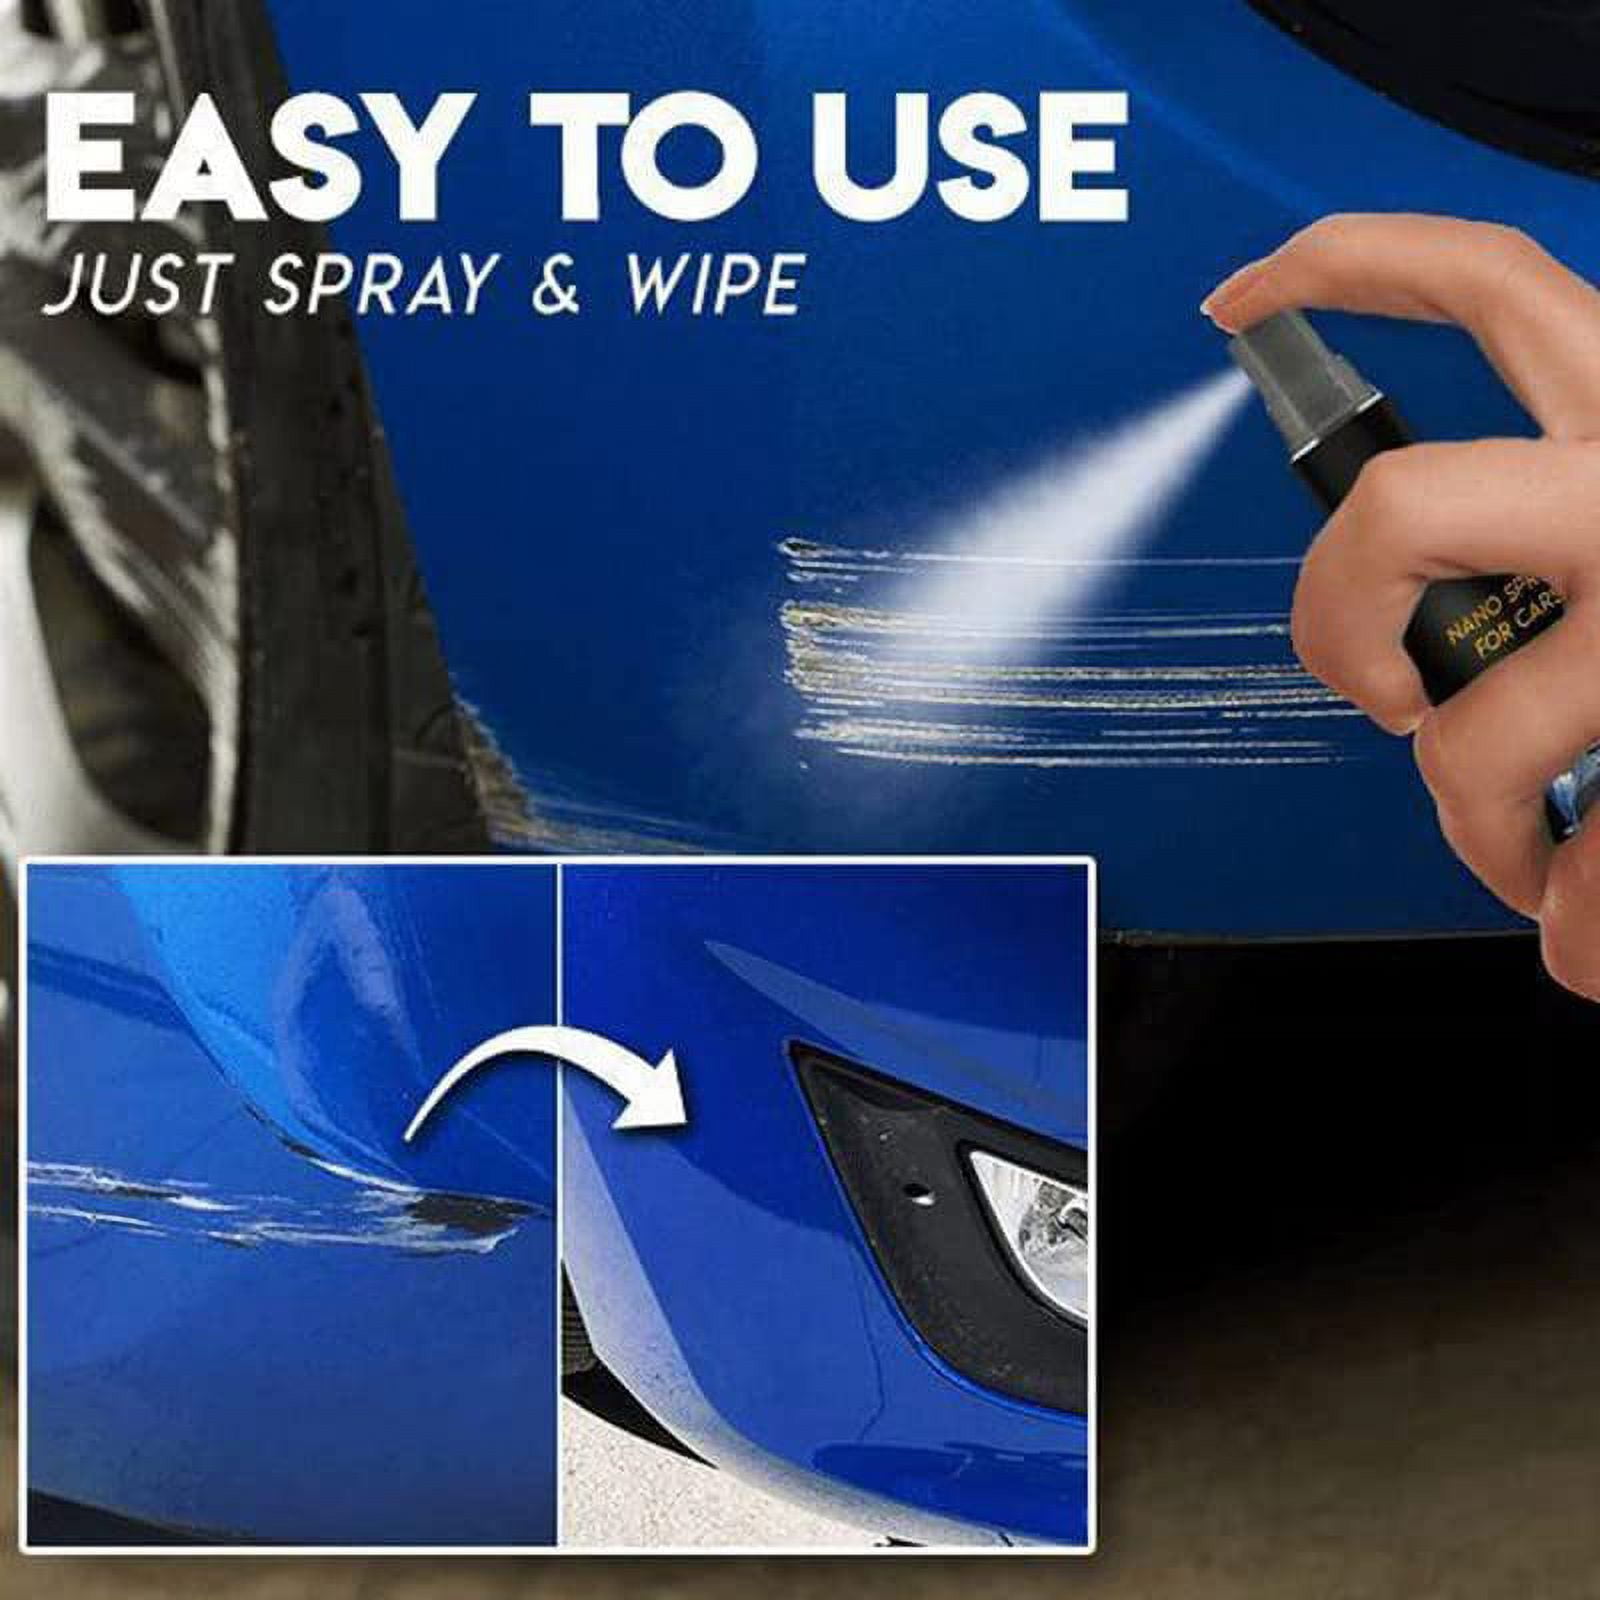  AutoCare Nano Repair Spray, Nano Car Scratch Repair Spray, Fast  Repair Scratches Repairing Polish Spray, Nano Sparkle Cloth Car Scratch  Remover, Crystal Coating for (2Pcs) : Automotive